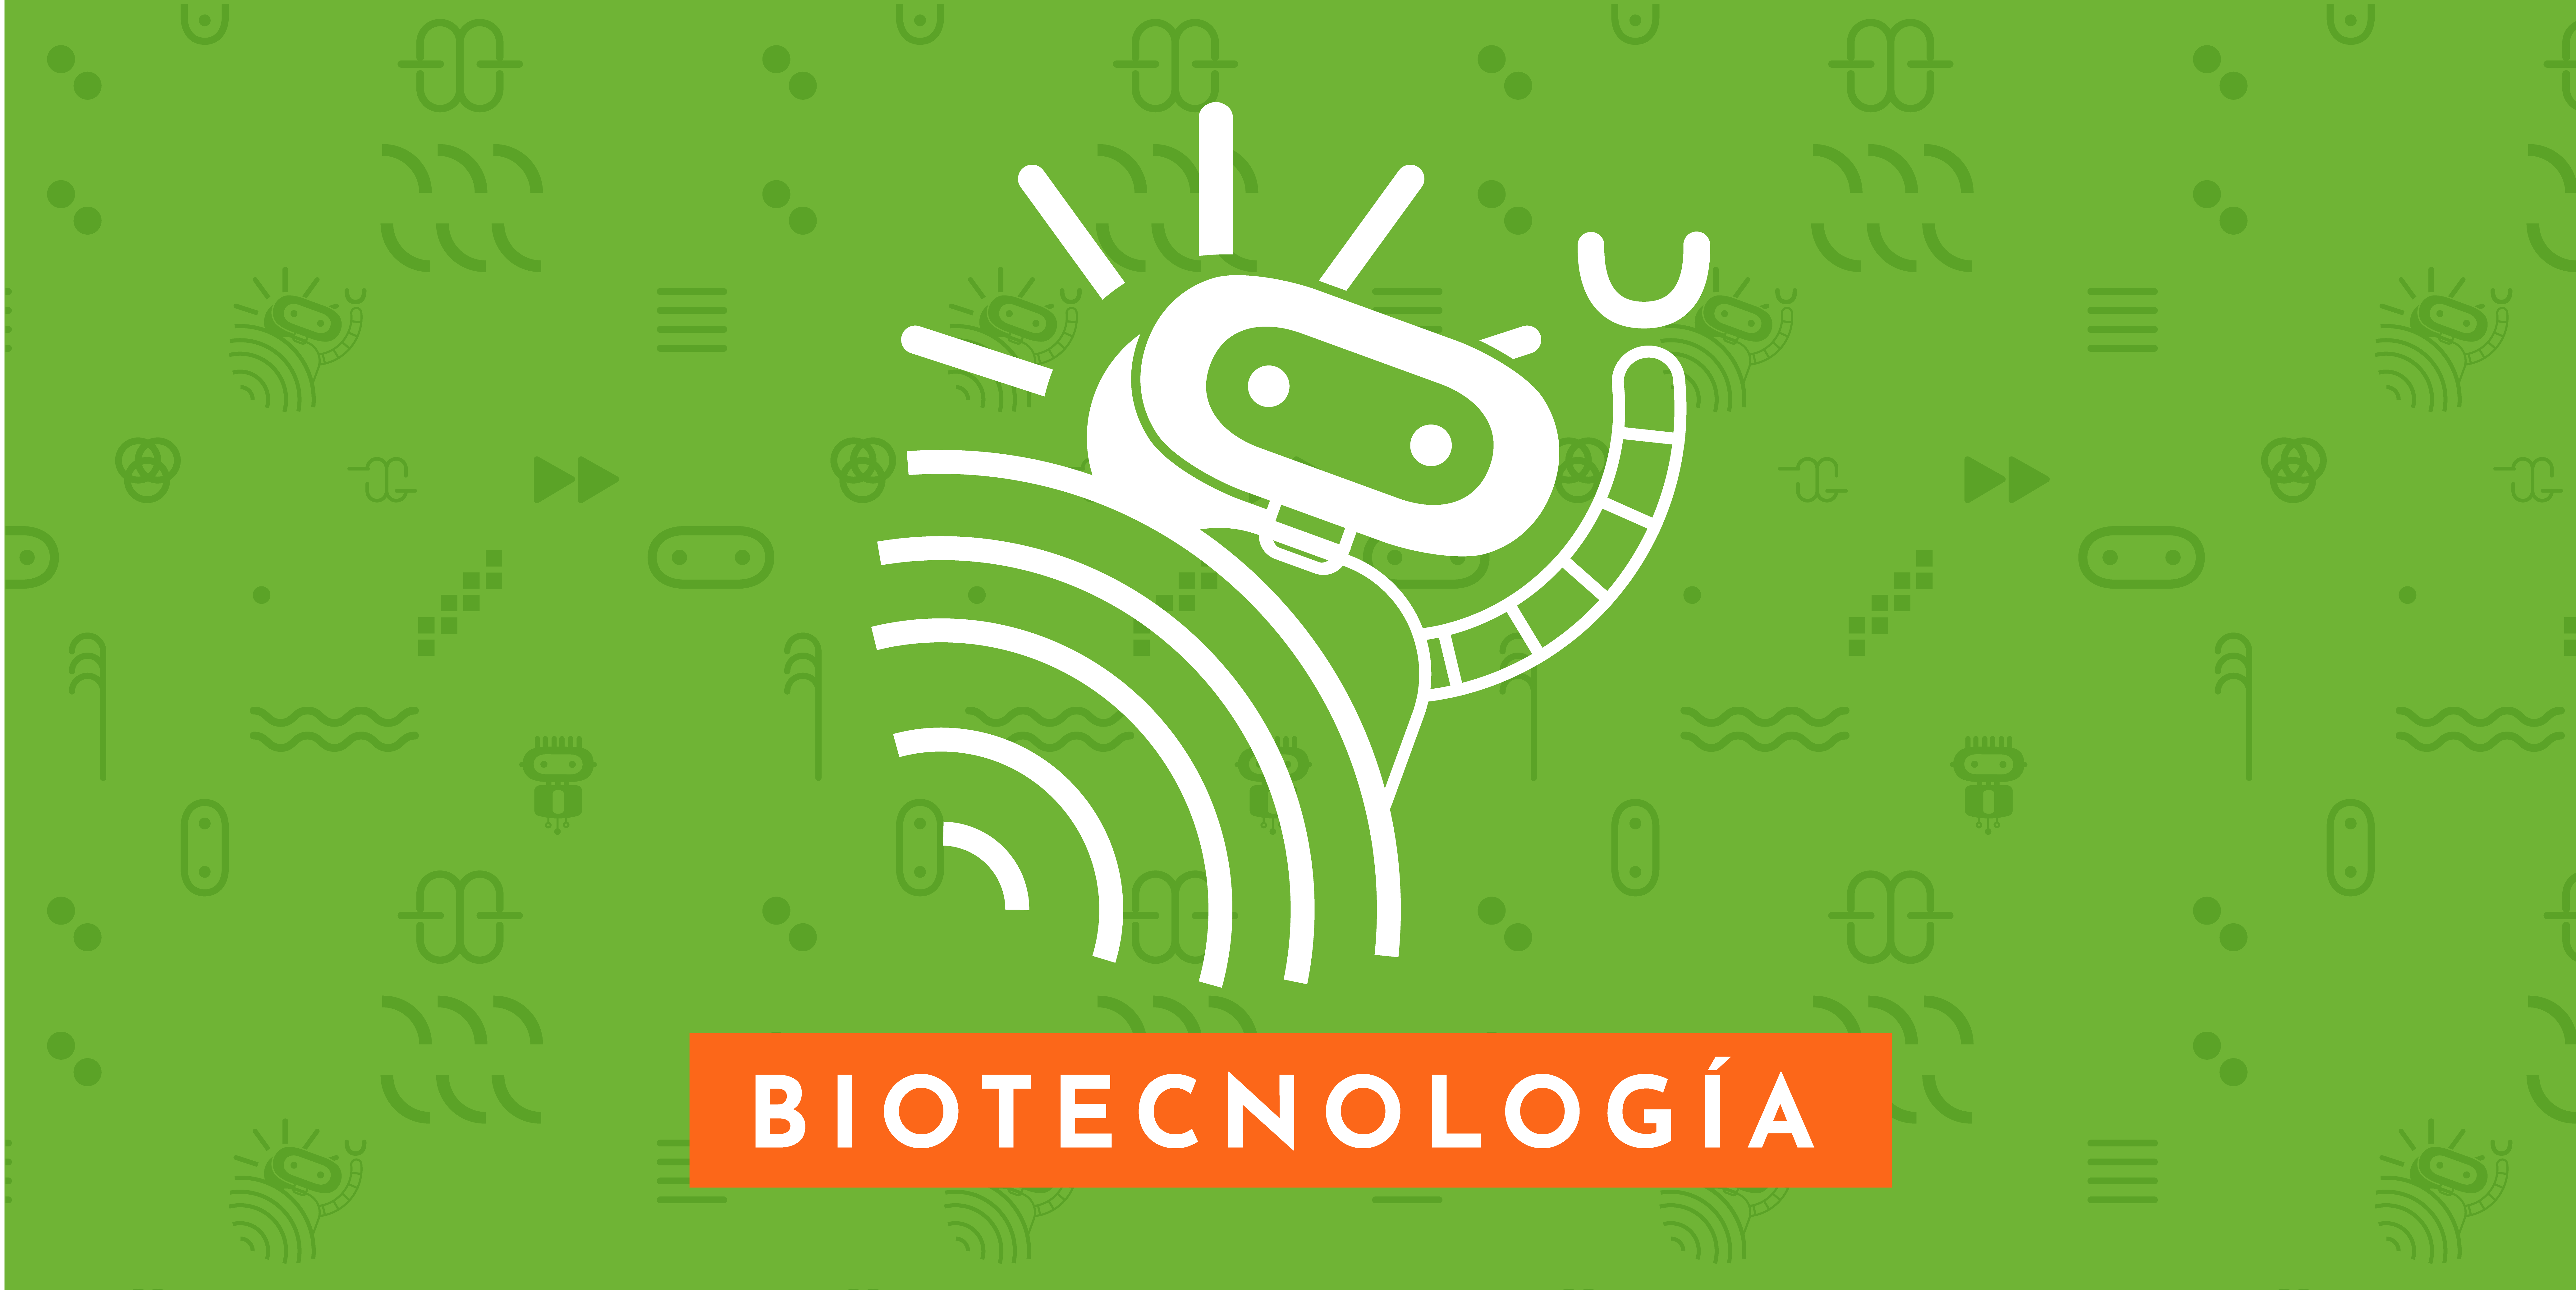 LOS ELEGIDOS - Biotecnología con un enfoque de Educación 4.0.